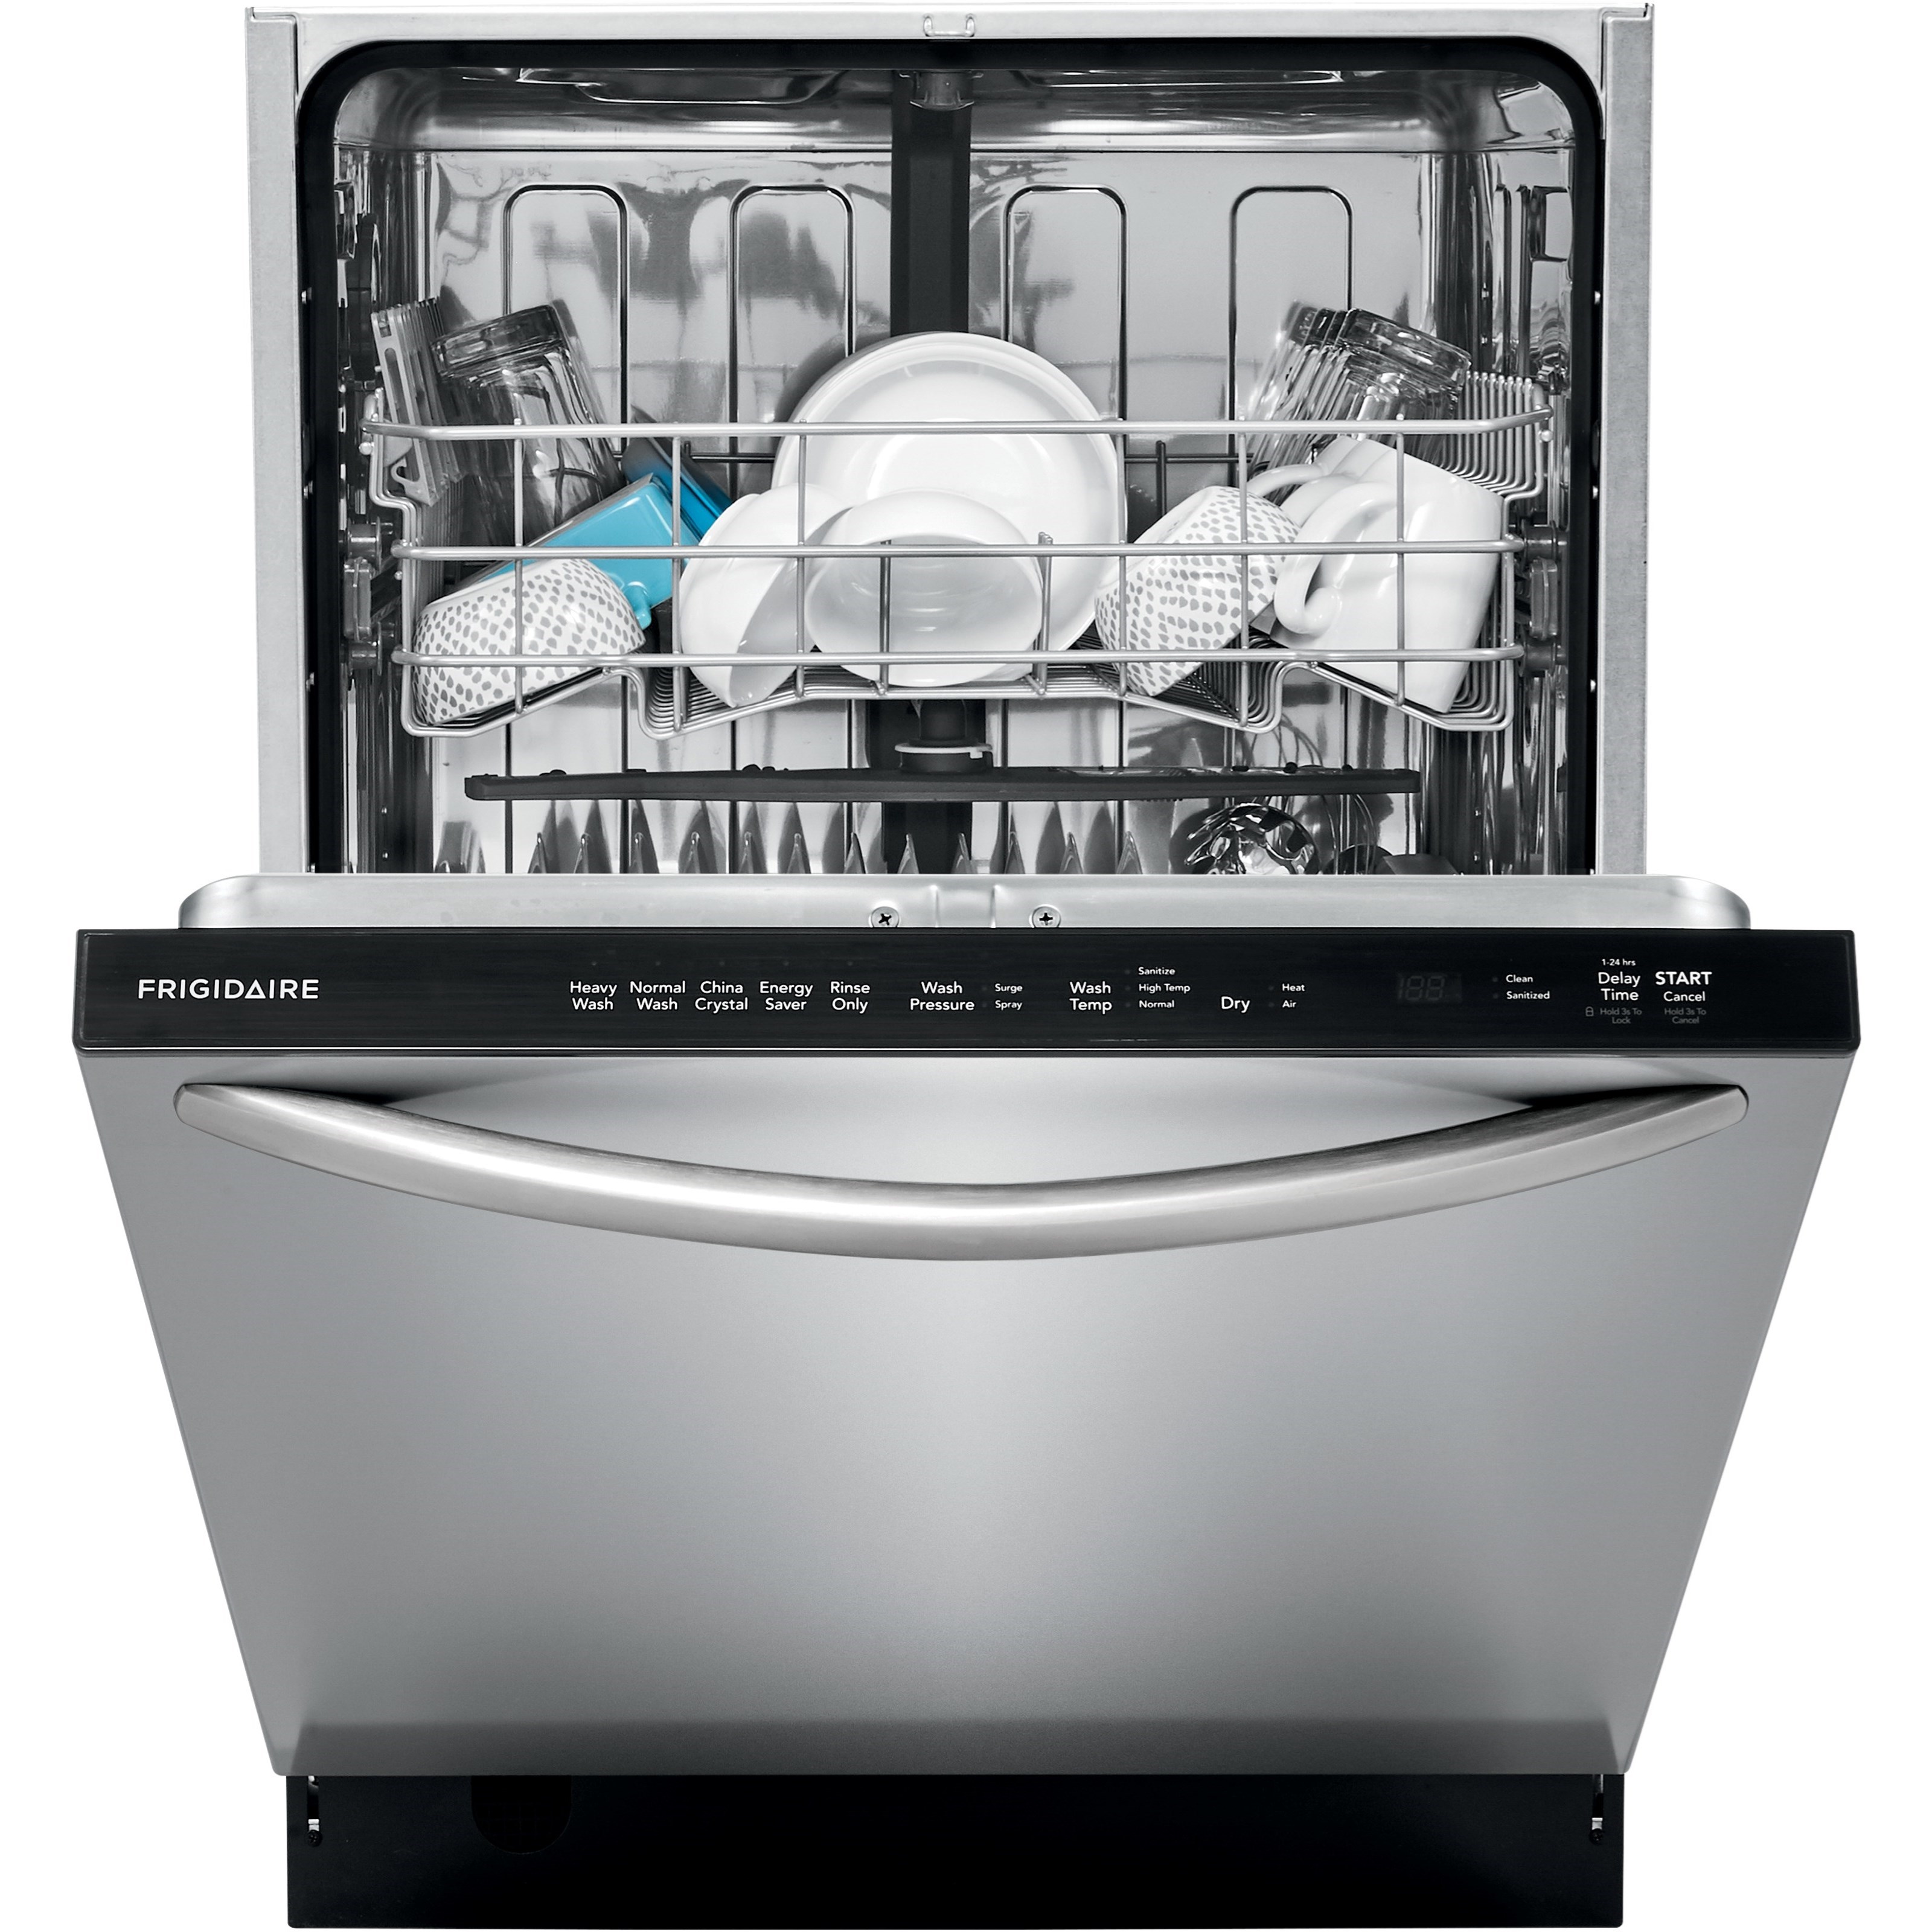 32.5 high dishwasher